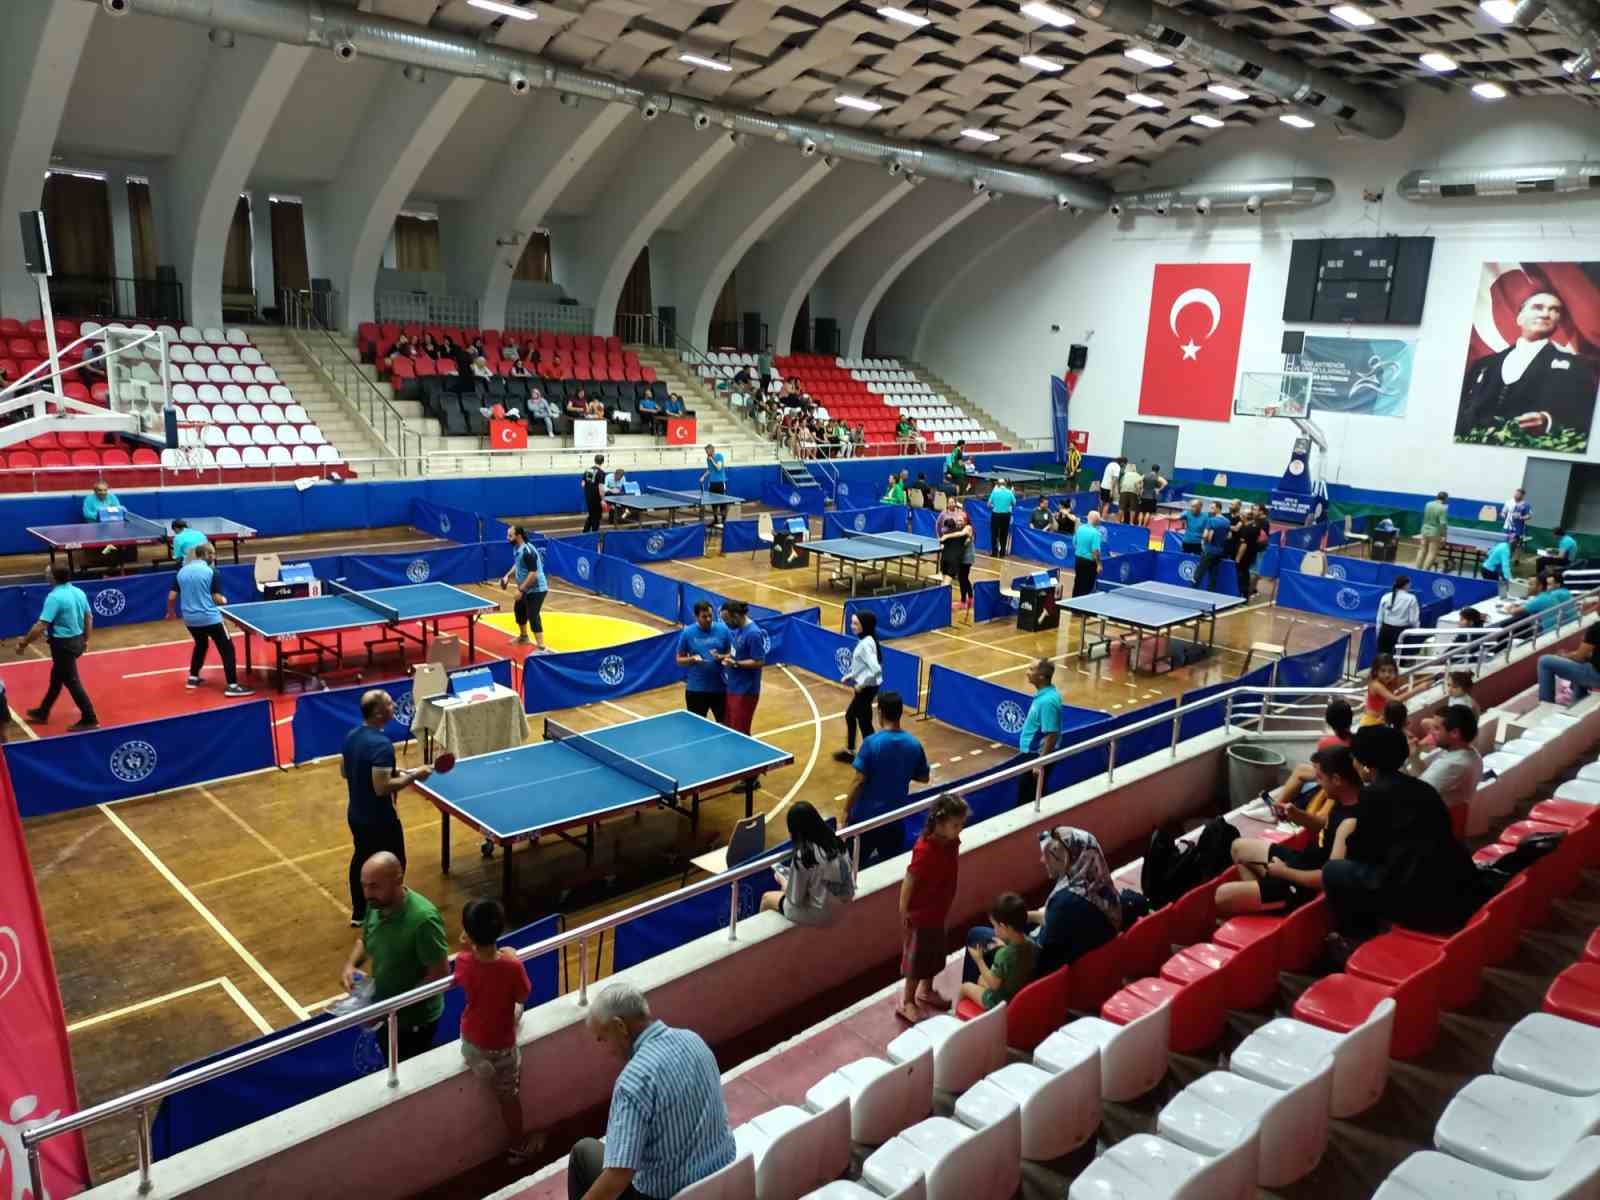 Aydın’da Kamu Kurumlar Arası Spor Oyunları devam ediyor